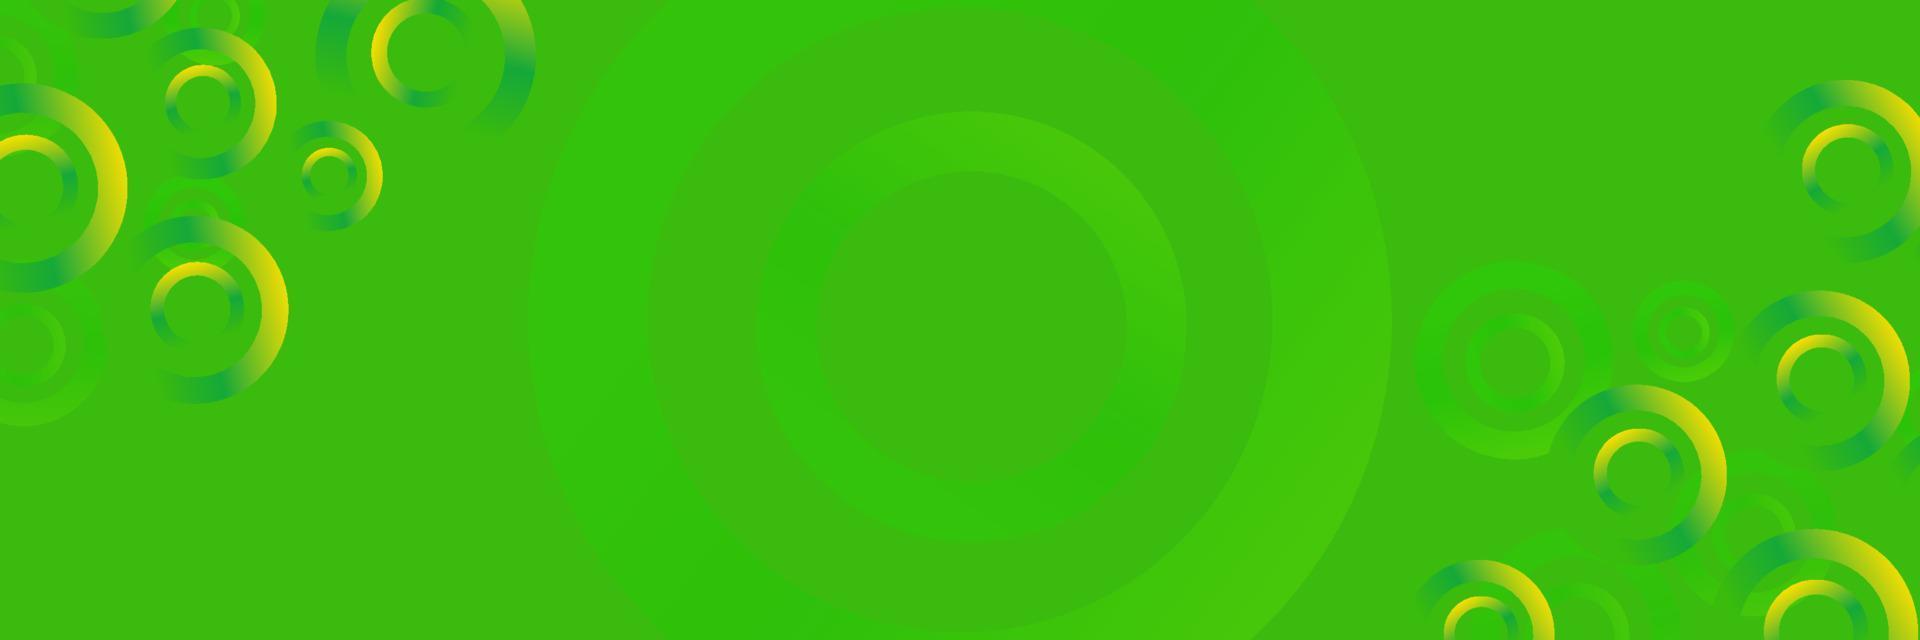 groen abstract achtergrond met cirkels dynamisch. sjabloon voor banier, website vector